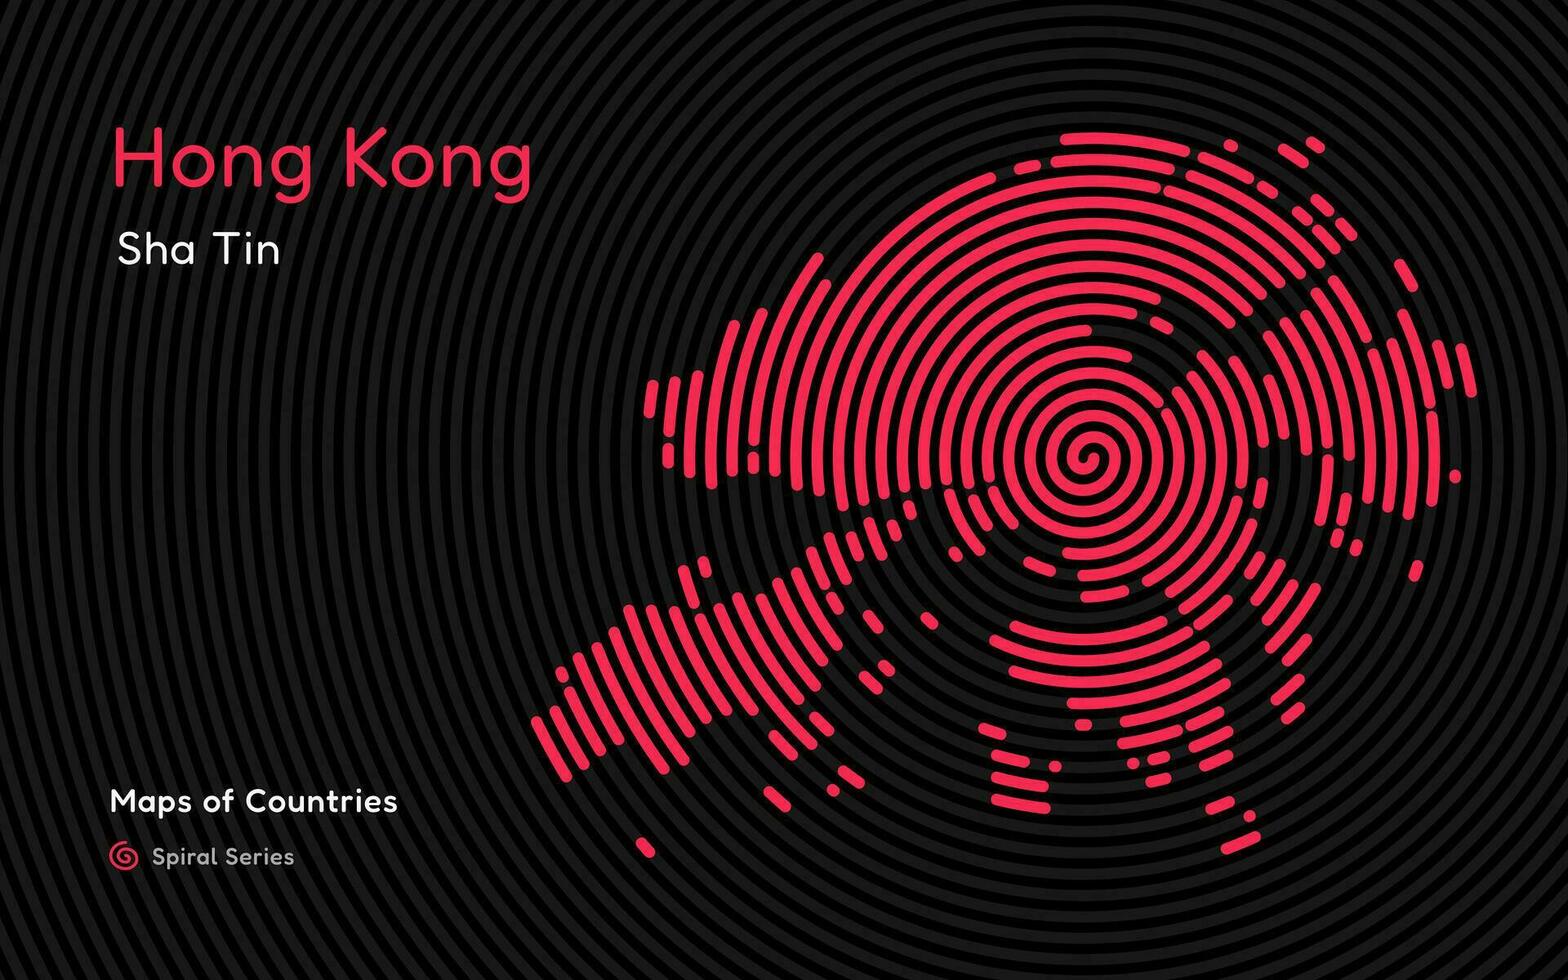 Abstract map of hong kong with circle lines. identifying its capital city, Sha Tin. Spiral fingerprint series vector